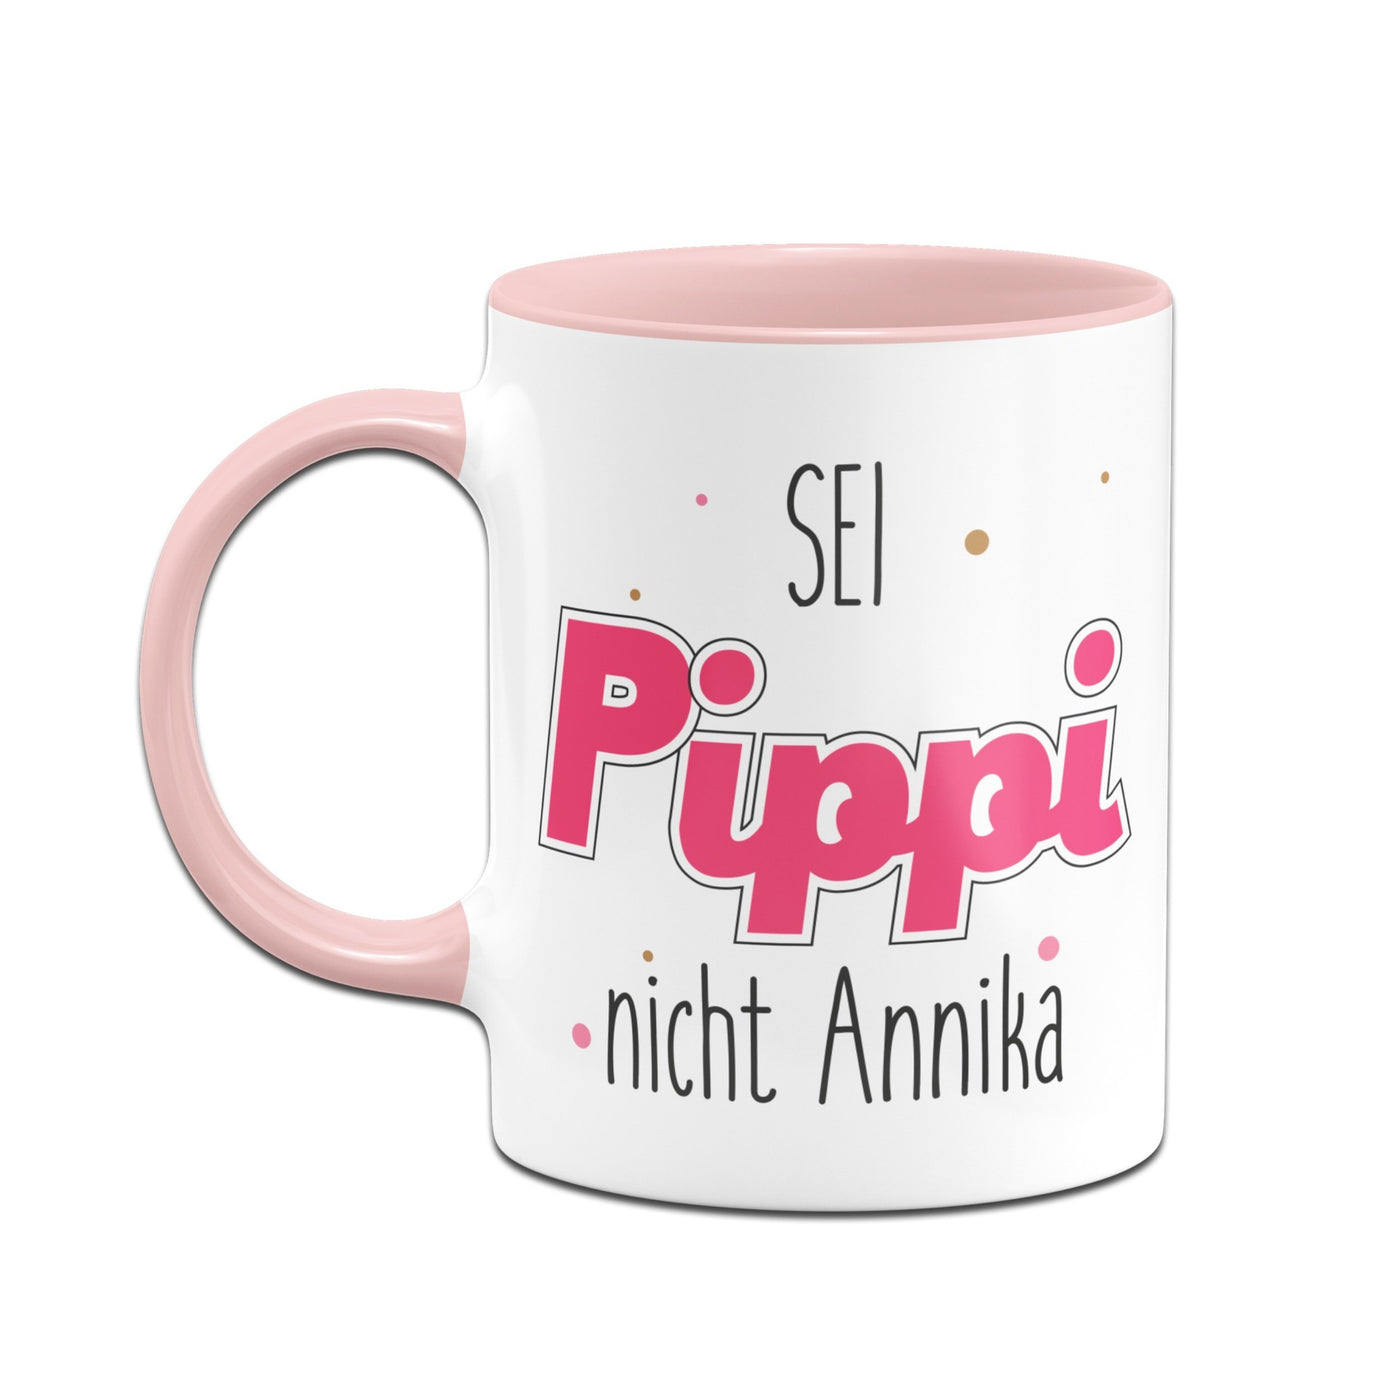 Bild: Tasse - Sei wie Pippi, nicht Annika Geschenkidee